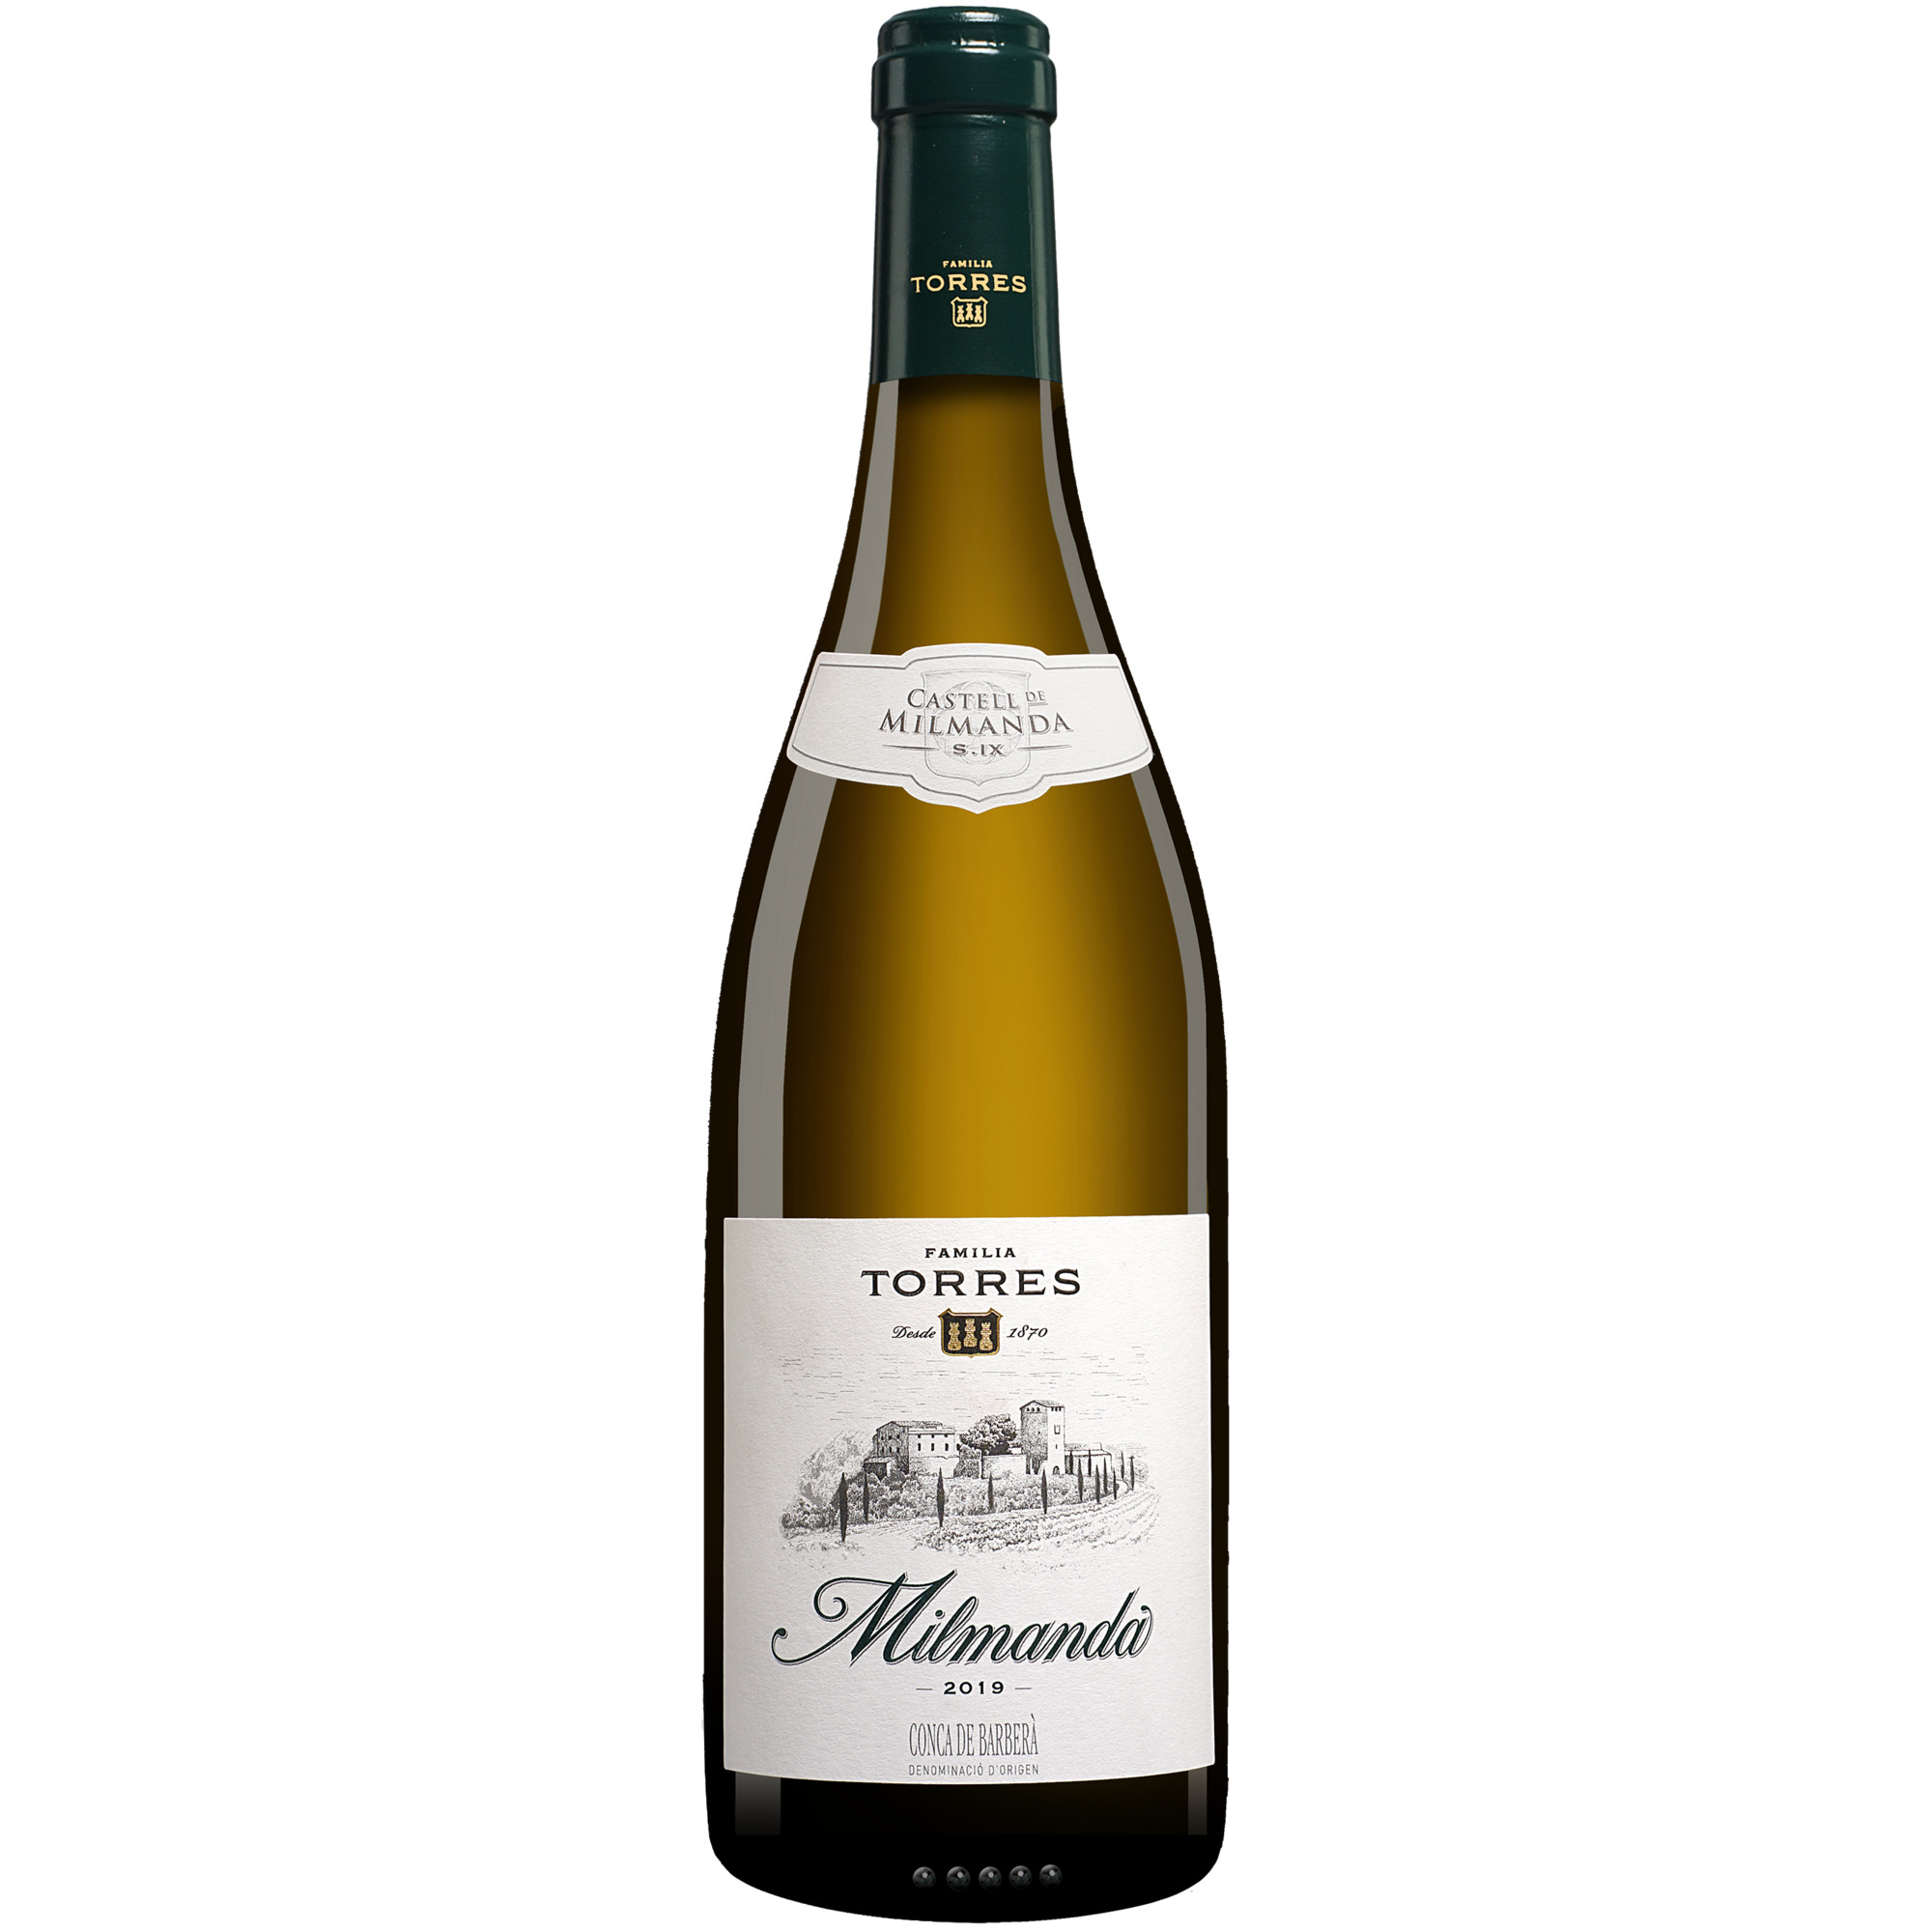 Torres »Milmanda« 2019  013.5% Vol. Weißwein Trocken aus Spanien